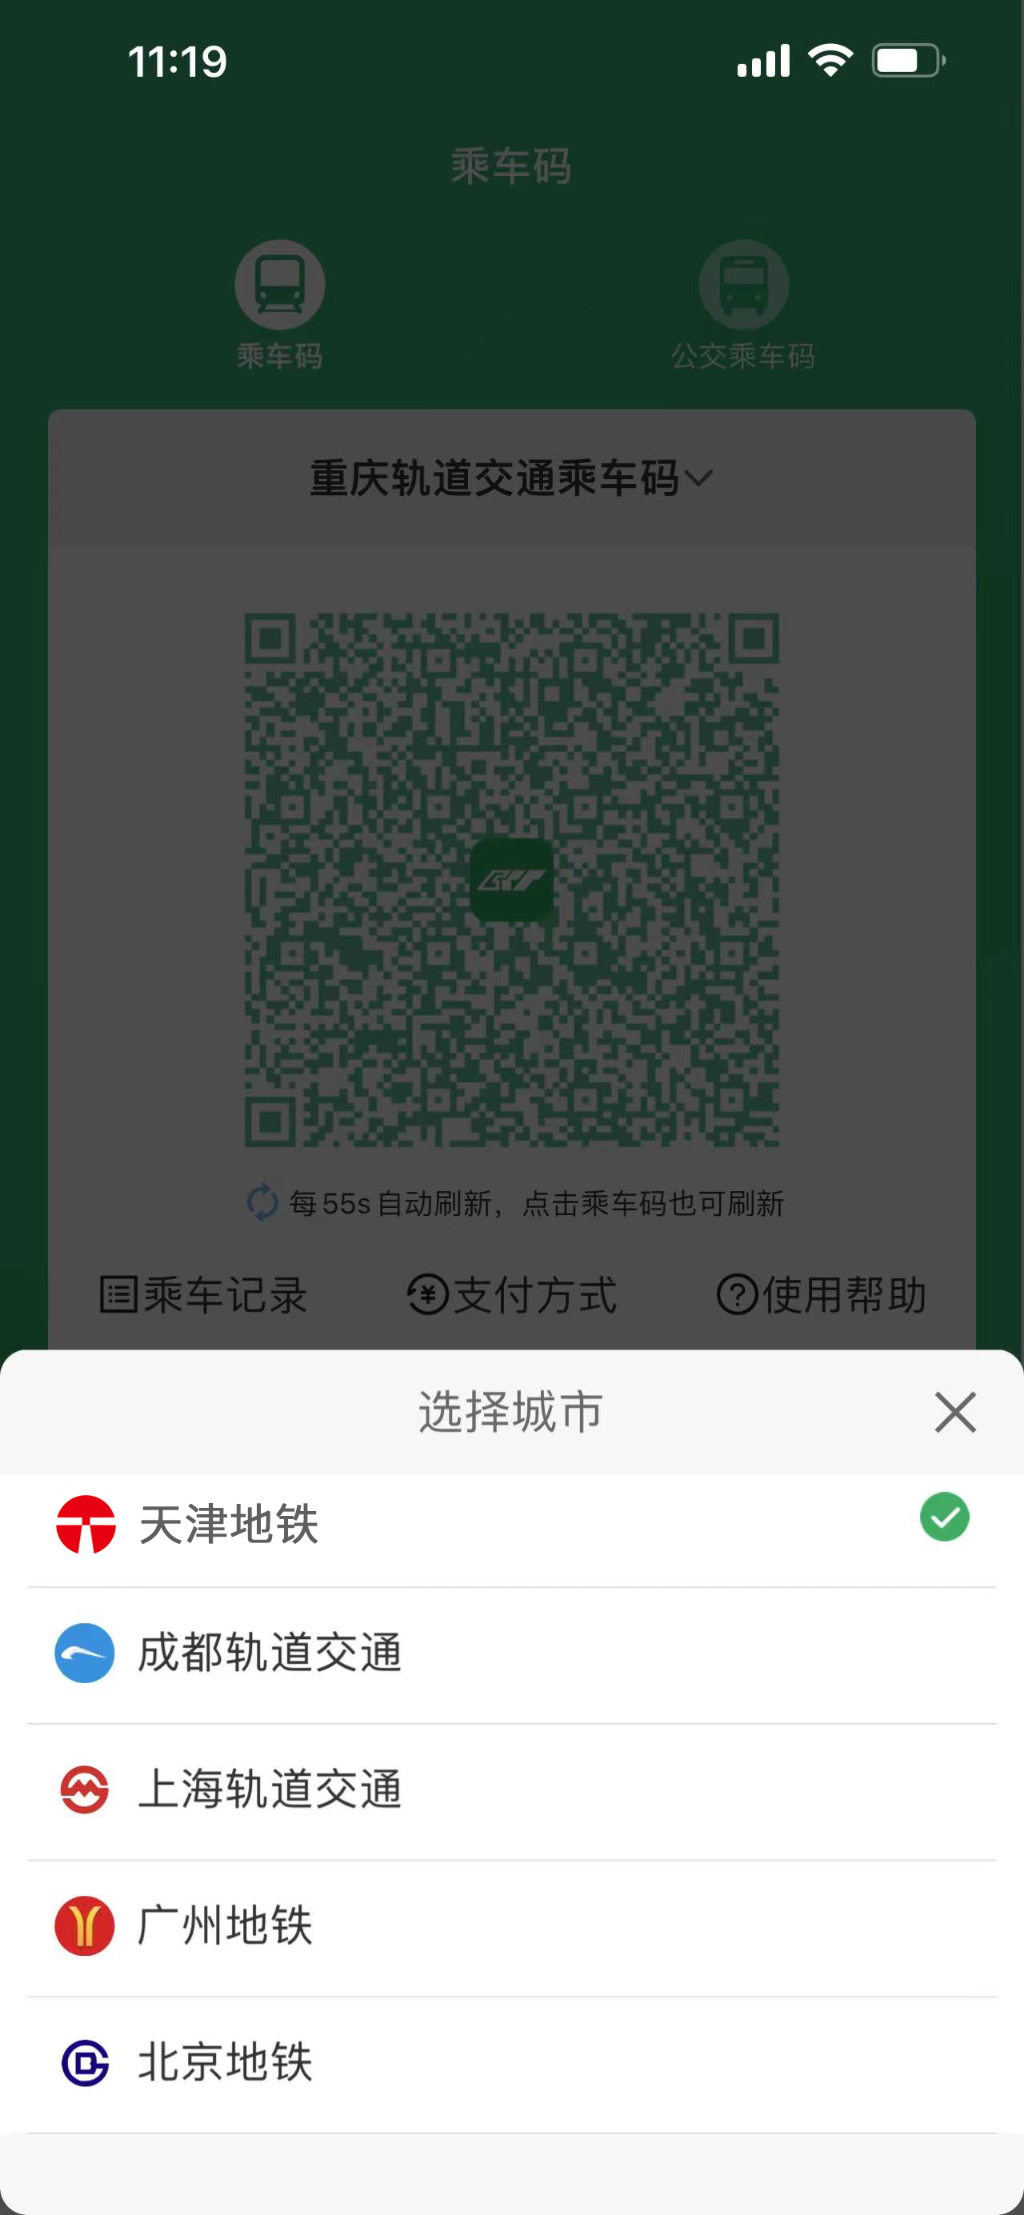 【转载】重庆轨道交通乘车二维码与北京、天津等五座城市实现互联互通